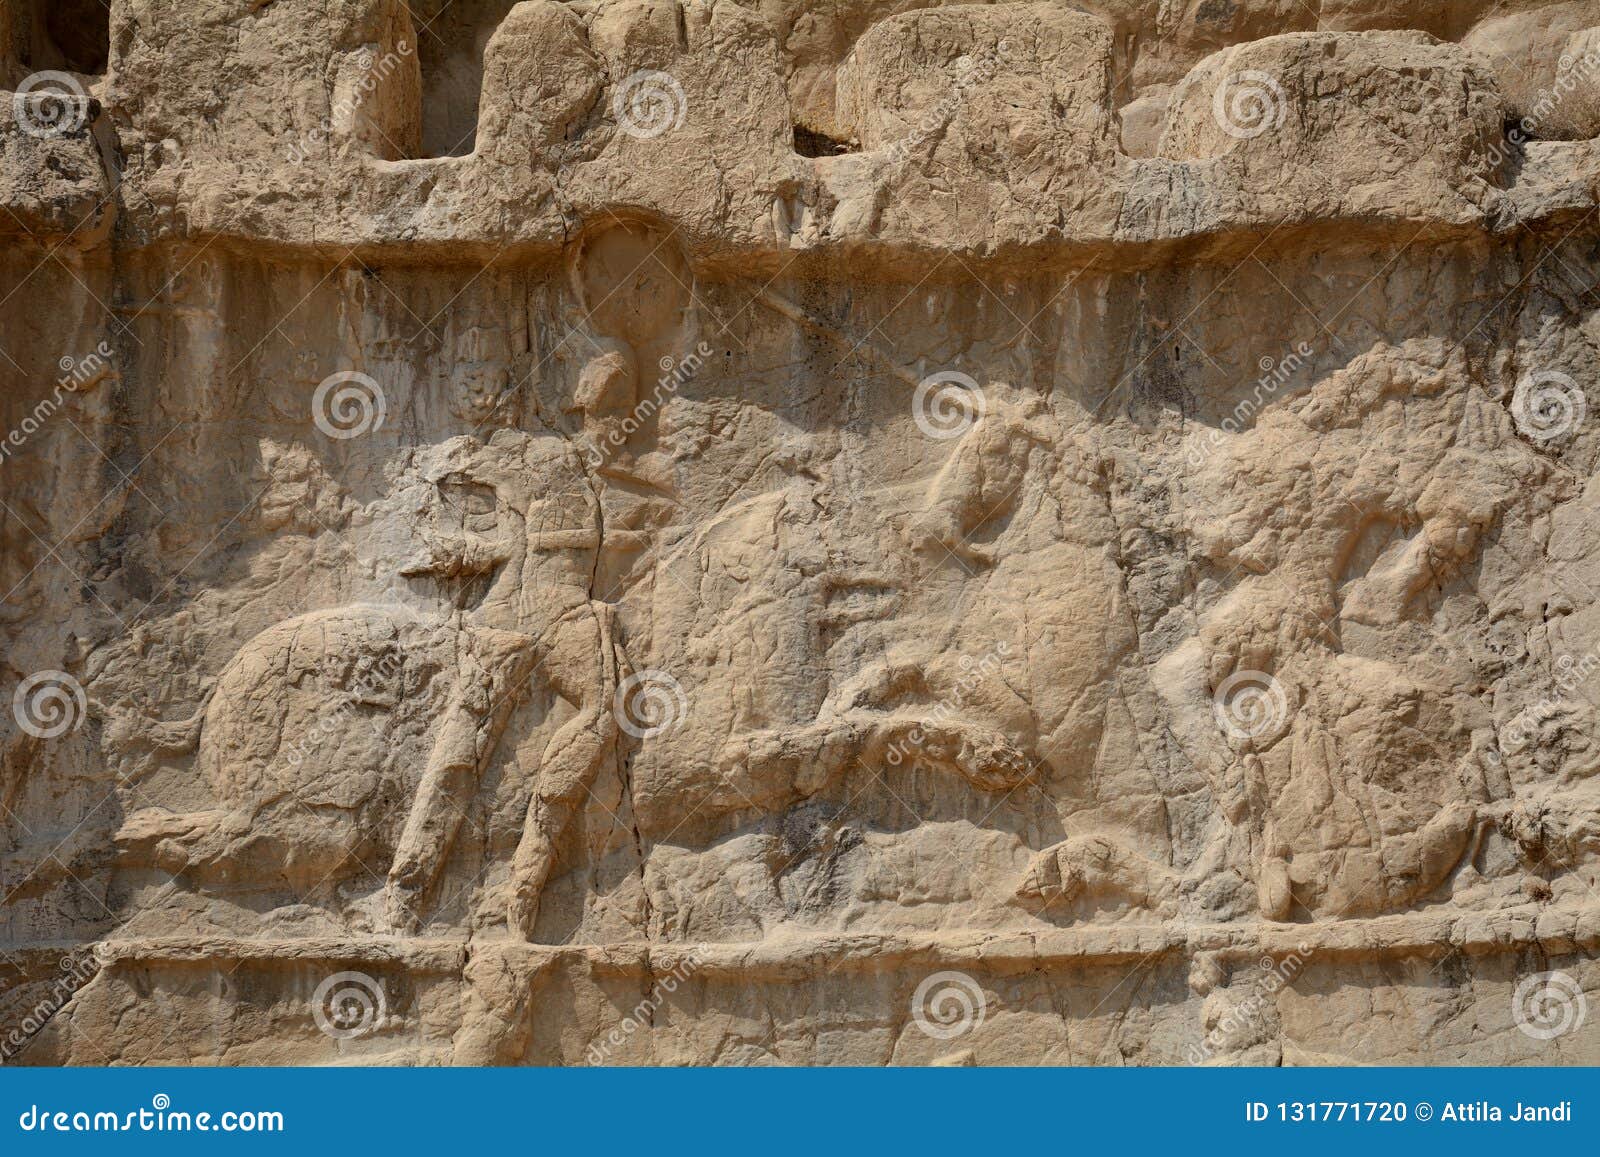 sasanian relief, naqsh-e rustam, iran